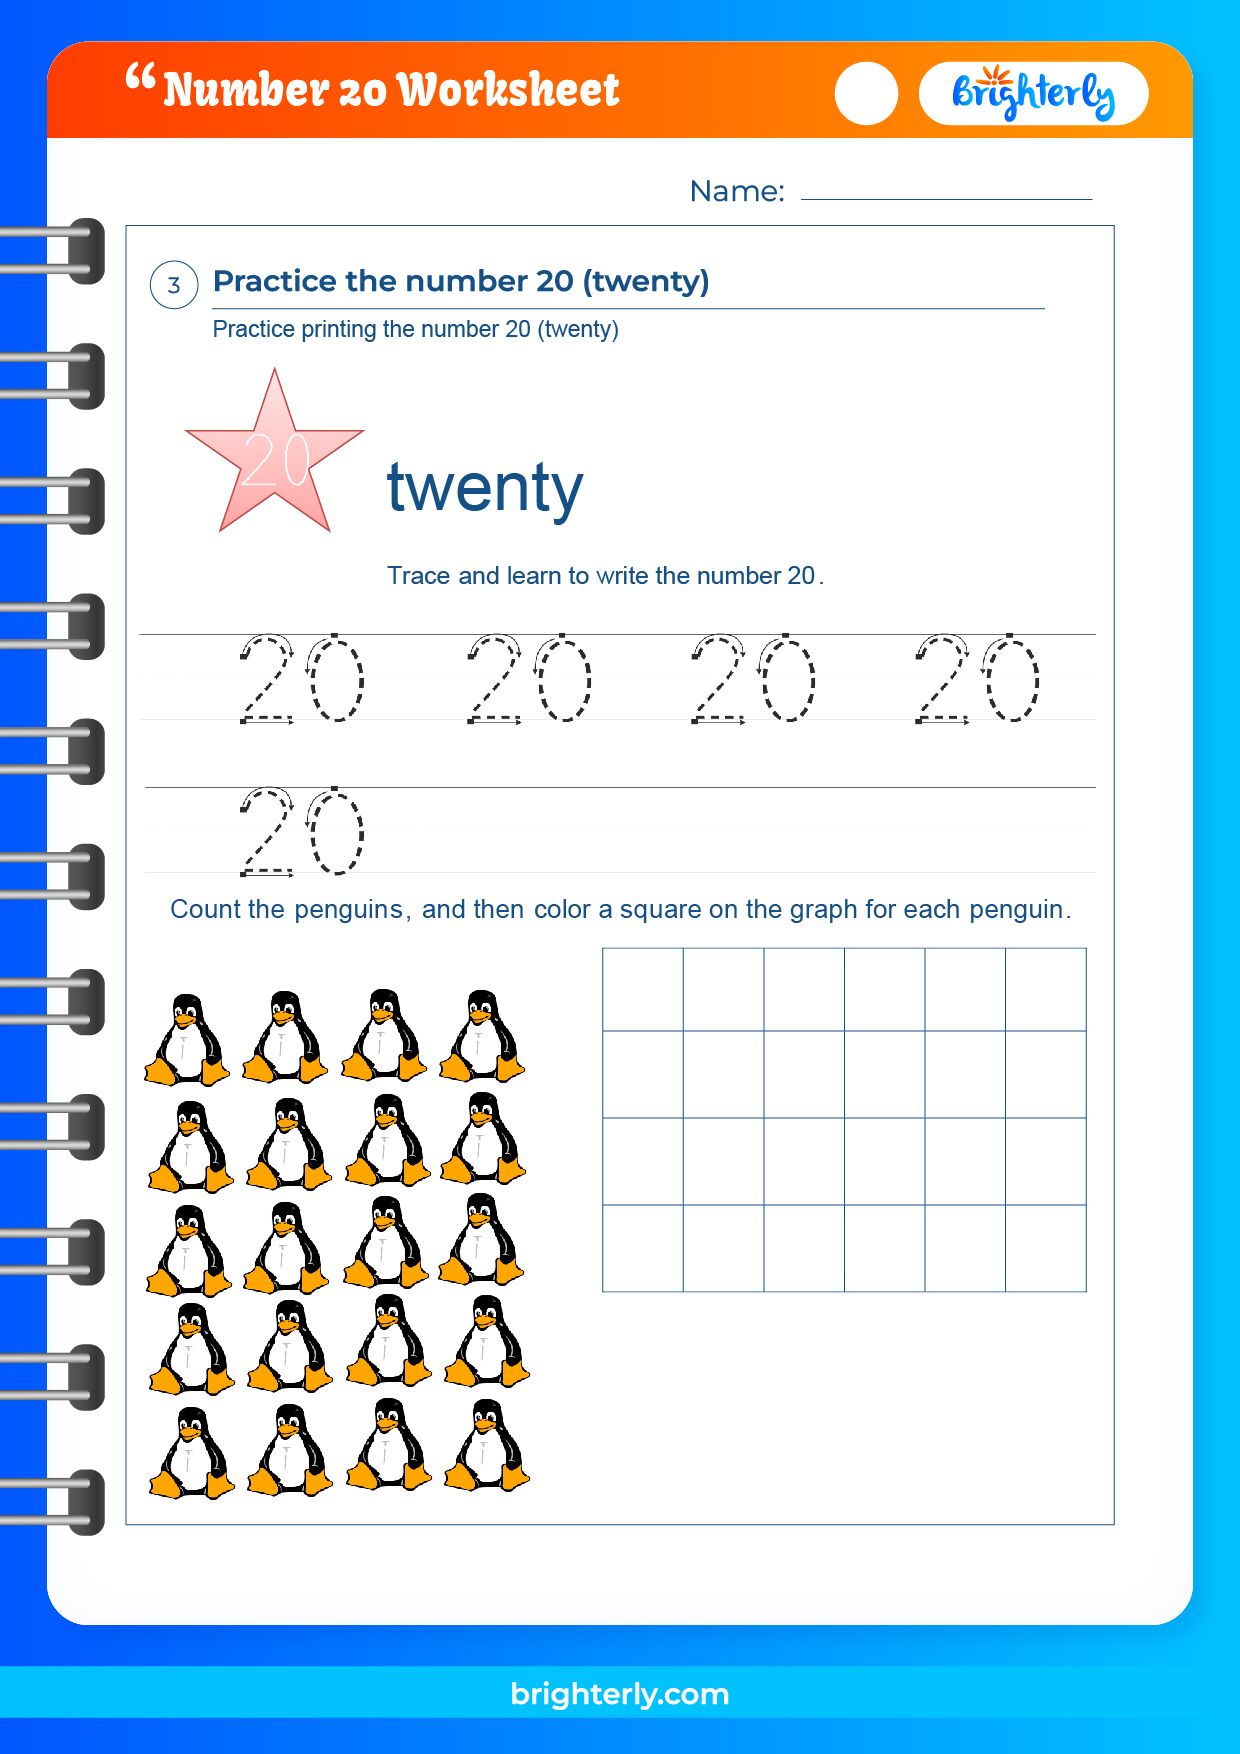 free-printable-number-20-twenty-worksheets-for-kids-pdfs